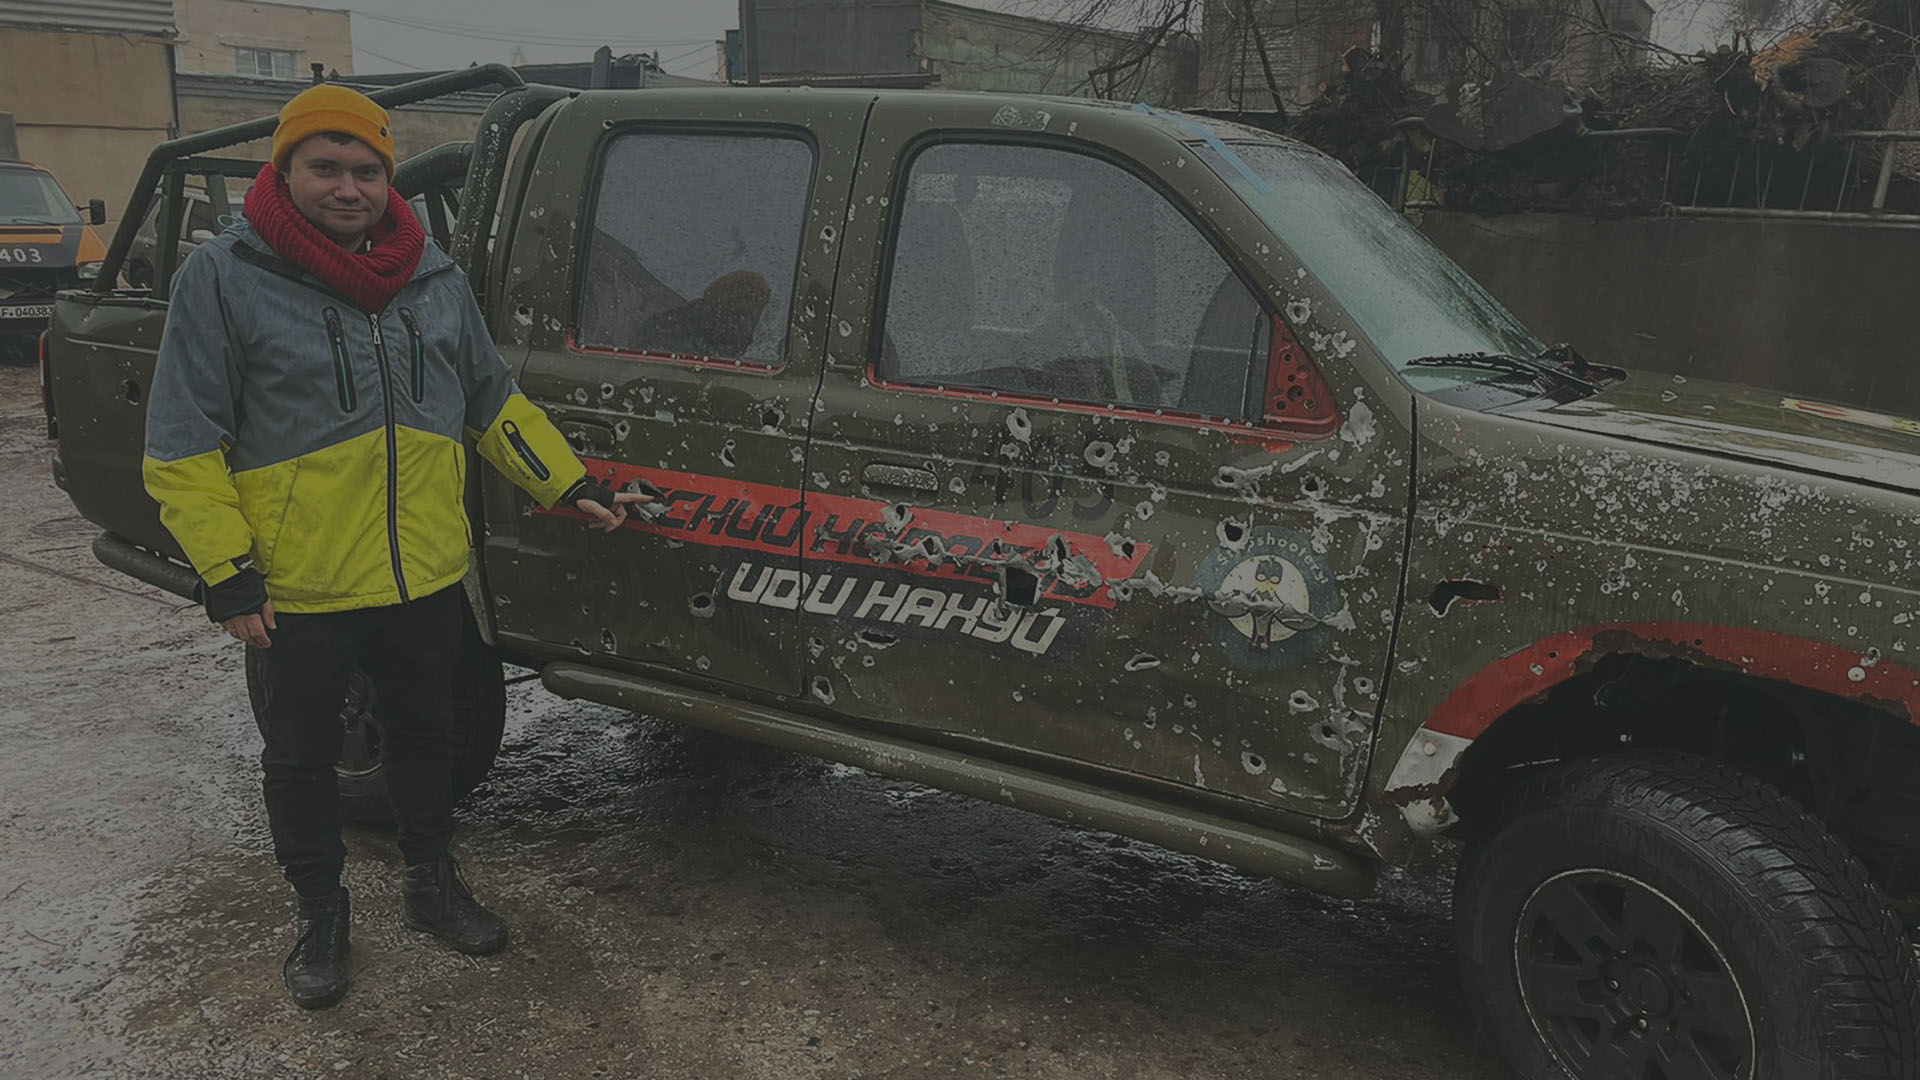 Una imagen de un automóvil bombardeado, que fue donado a Car for Ukraine y utilizado en el frente ucraniano.